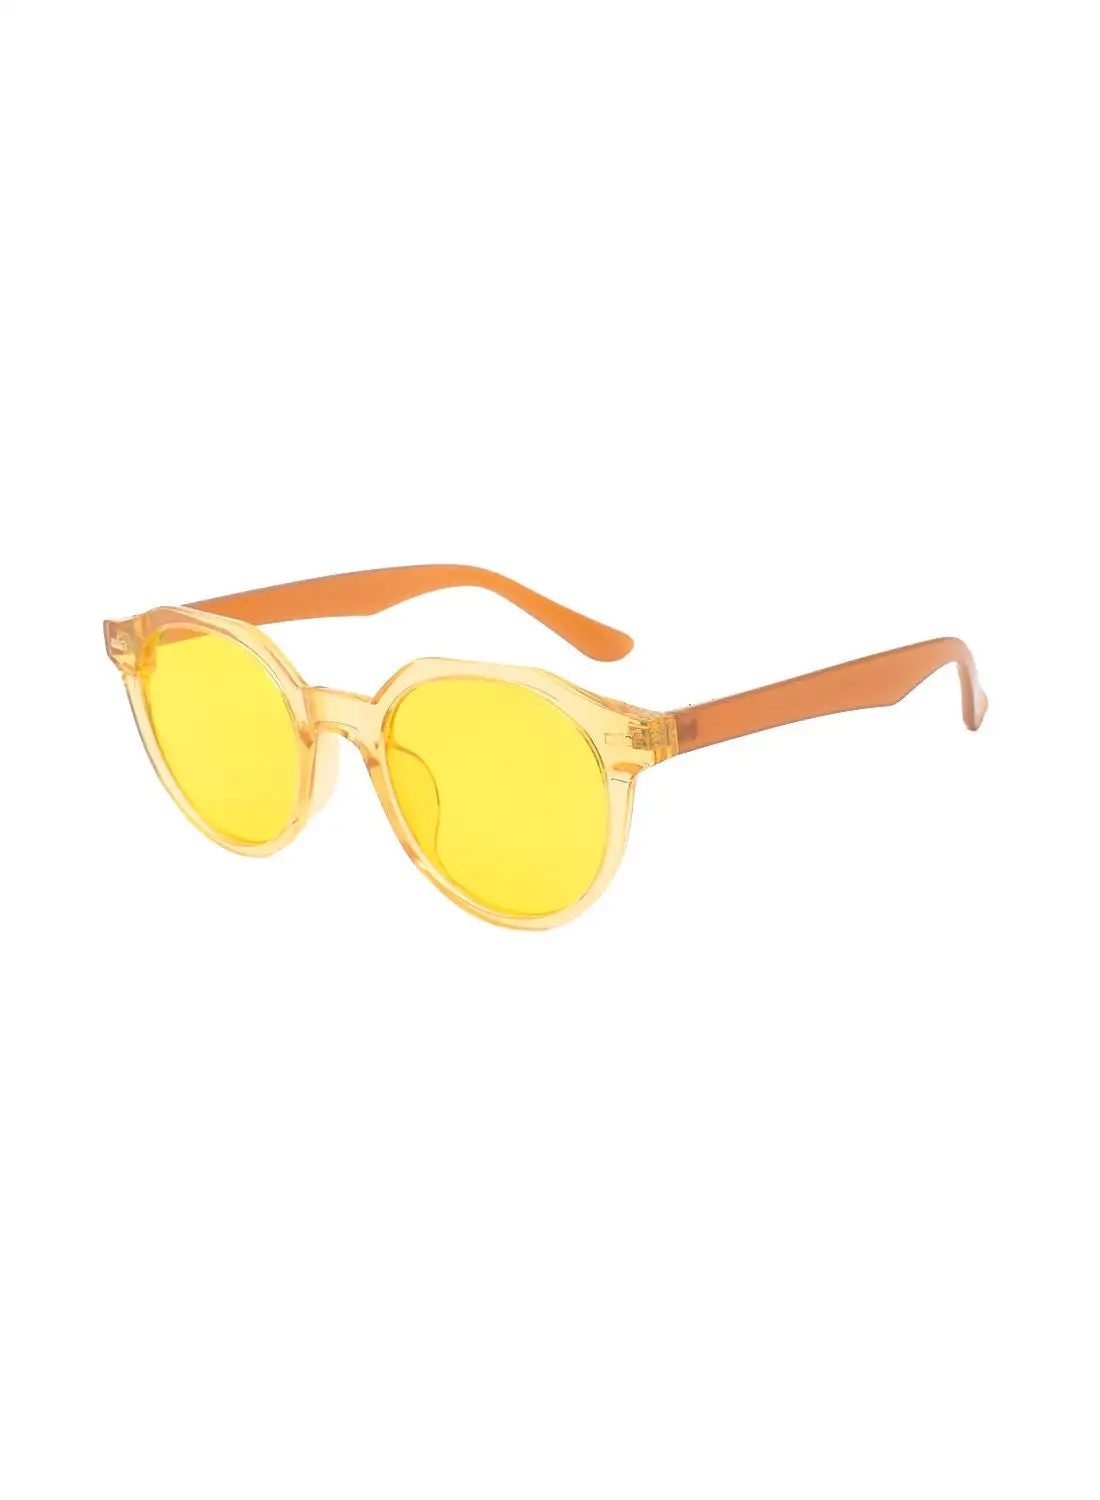 مايز نظارة شمسية بيضاوية الشكل EE20X059-3